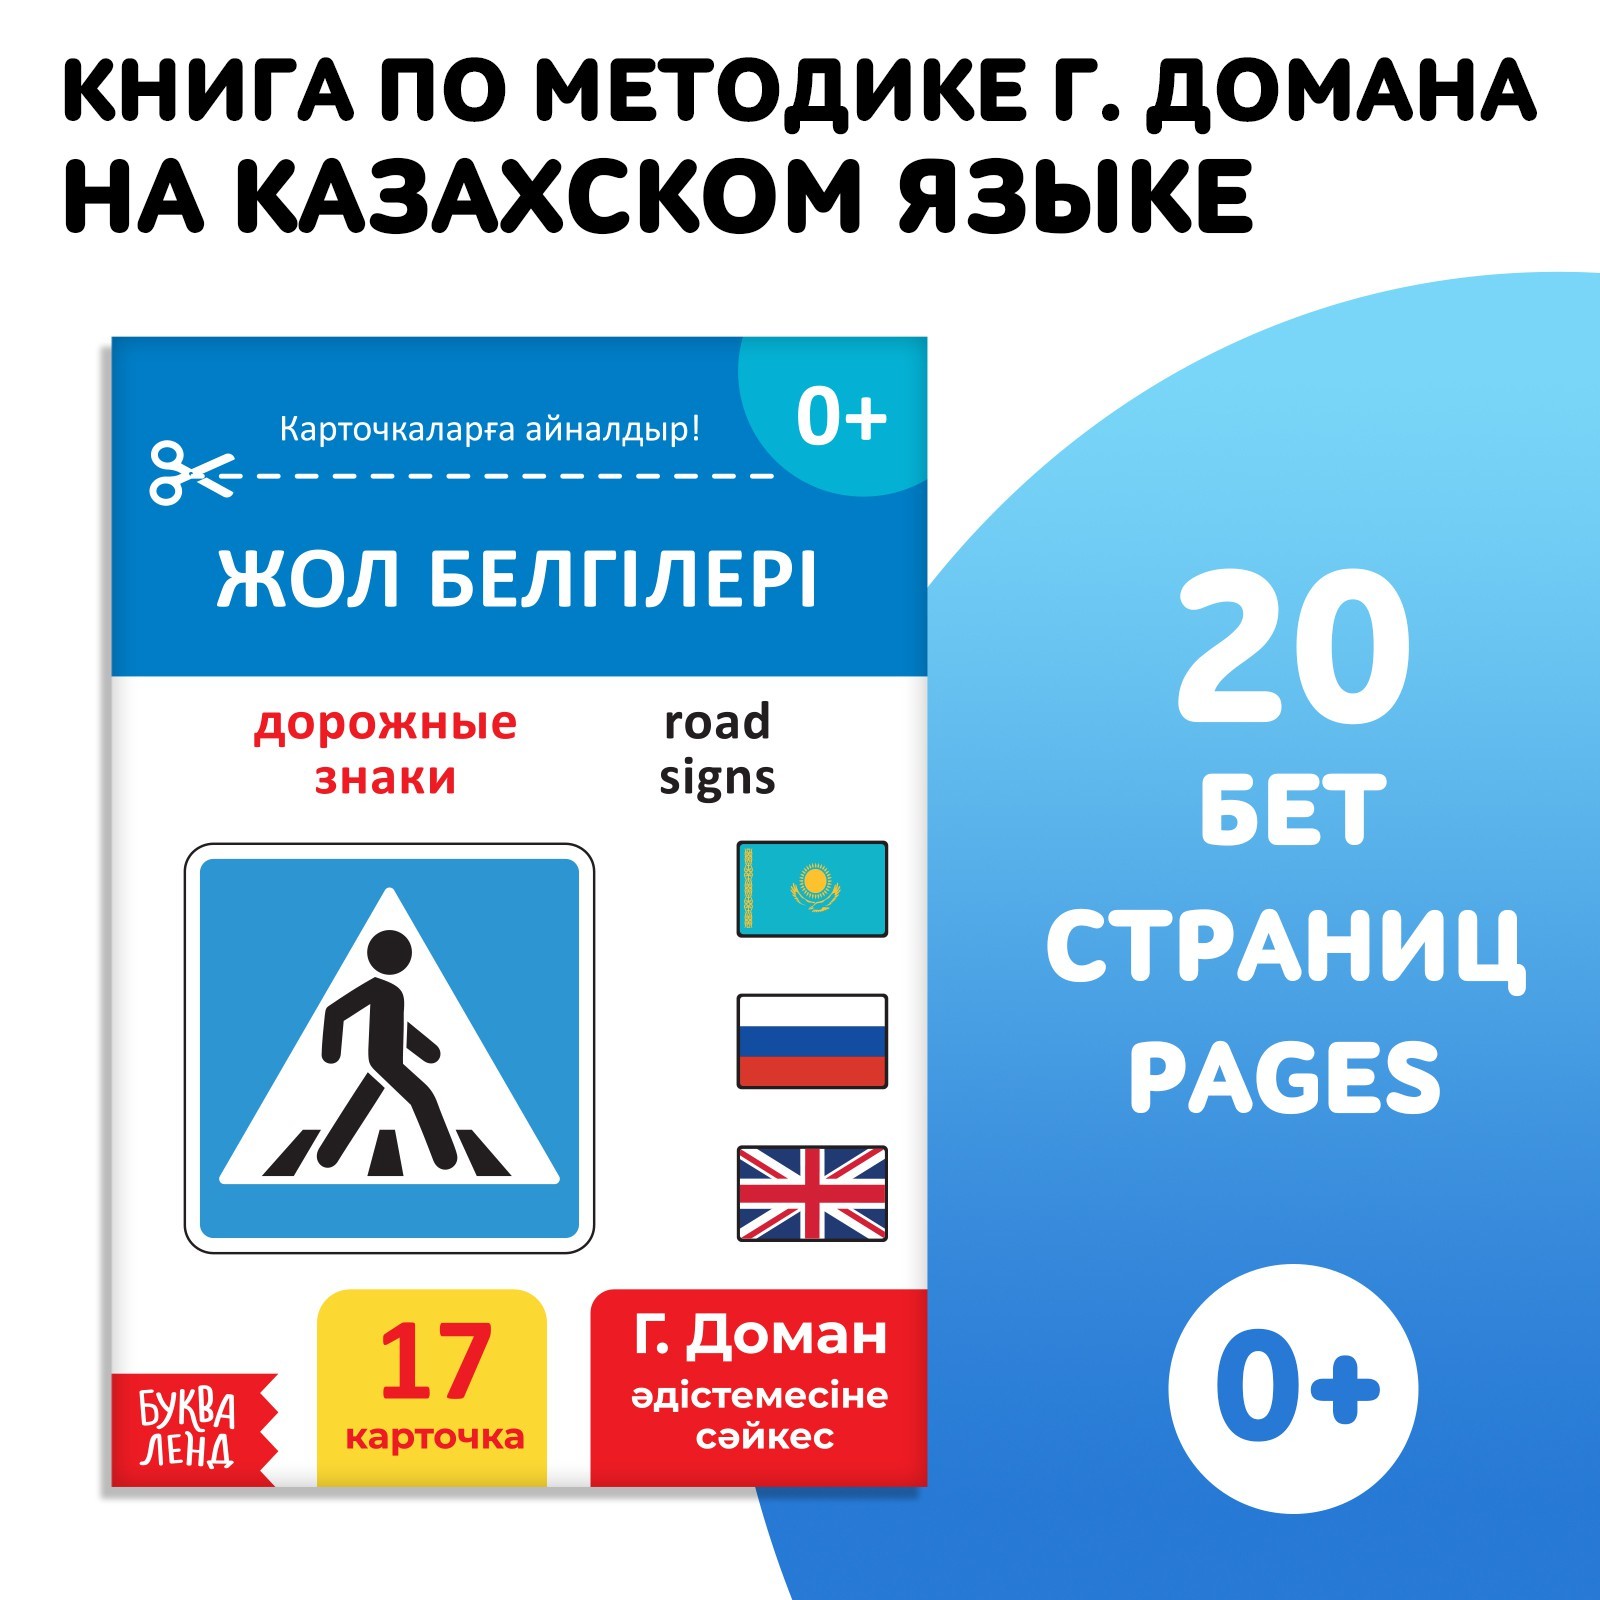 Книга по методике Г. Домана Дорожные знаки, на казахском языке 9828792 (Вид 1)